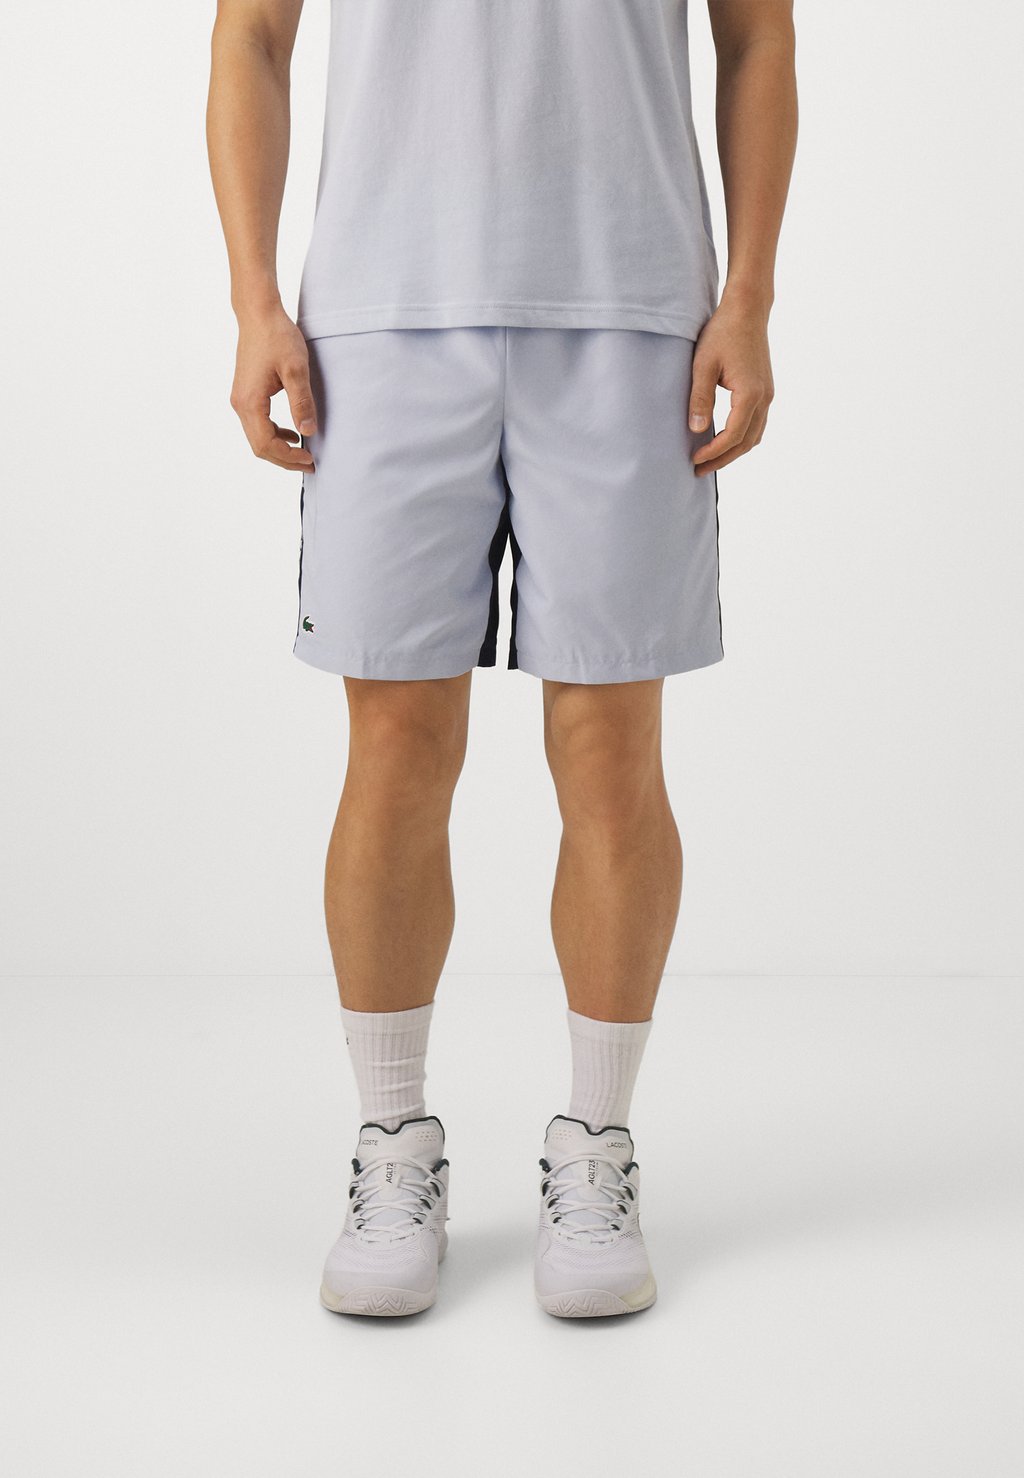 Спортивные шорты Shorts Tc Lacoste, цвет phoenix blue/navy blue спортивные шорты sports shorts lacoste цвет navy blue